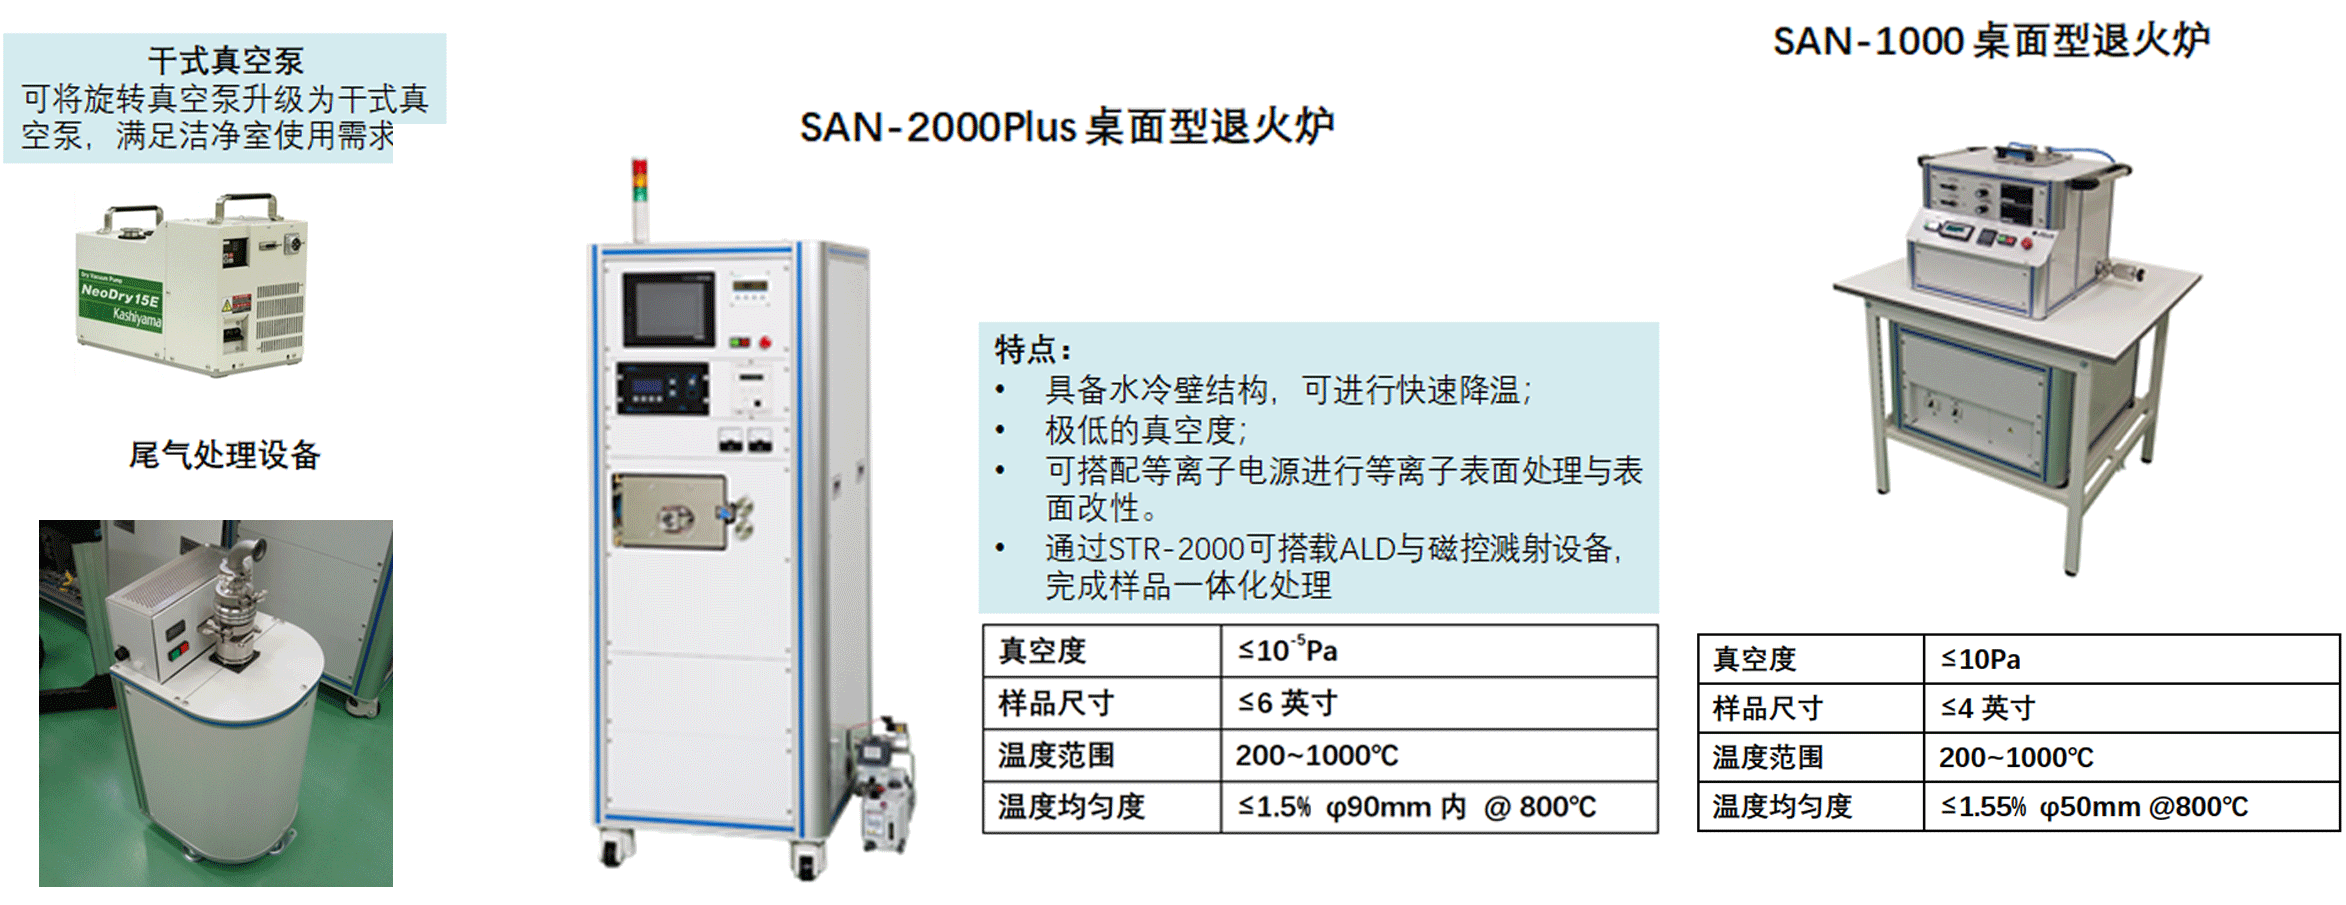 SAL-1000配件.gif